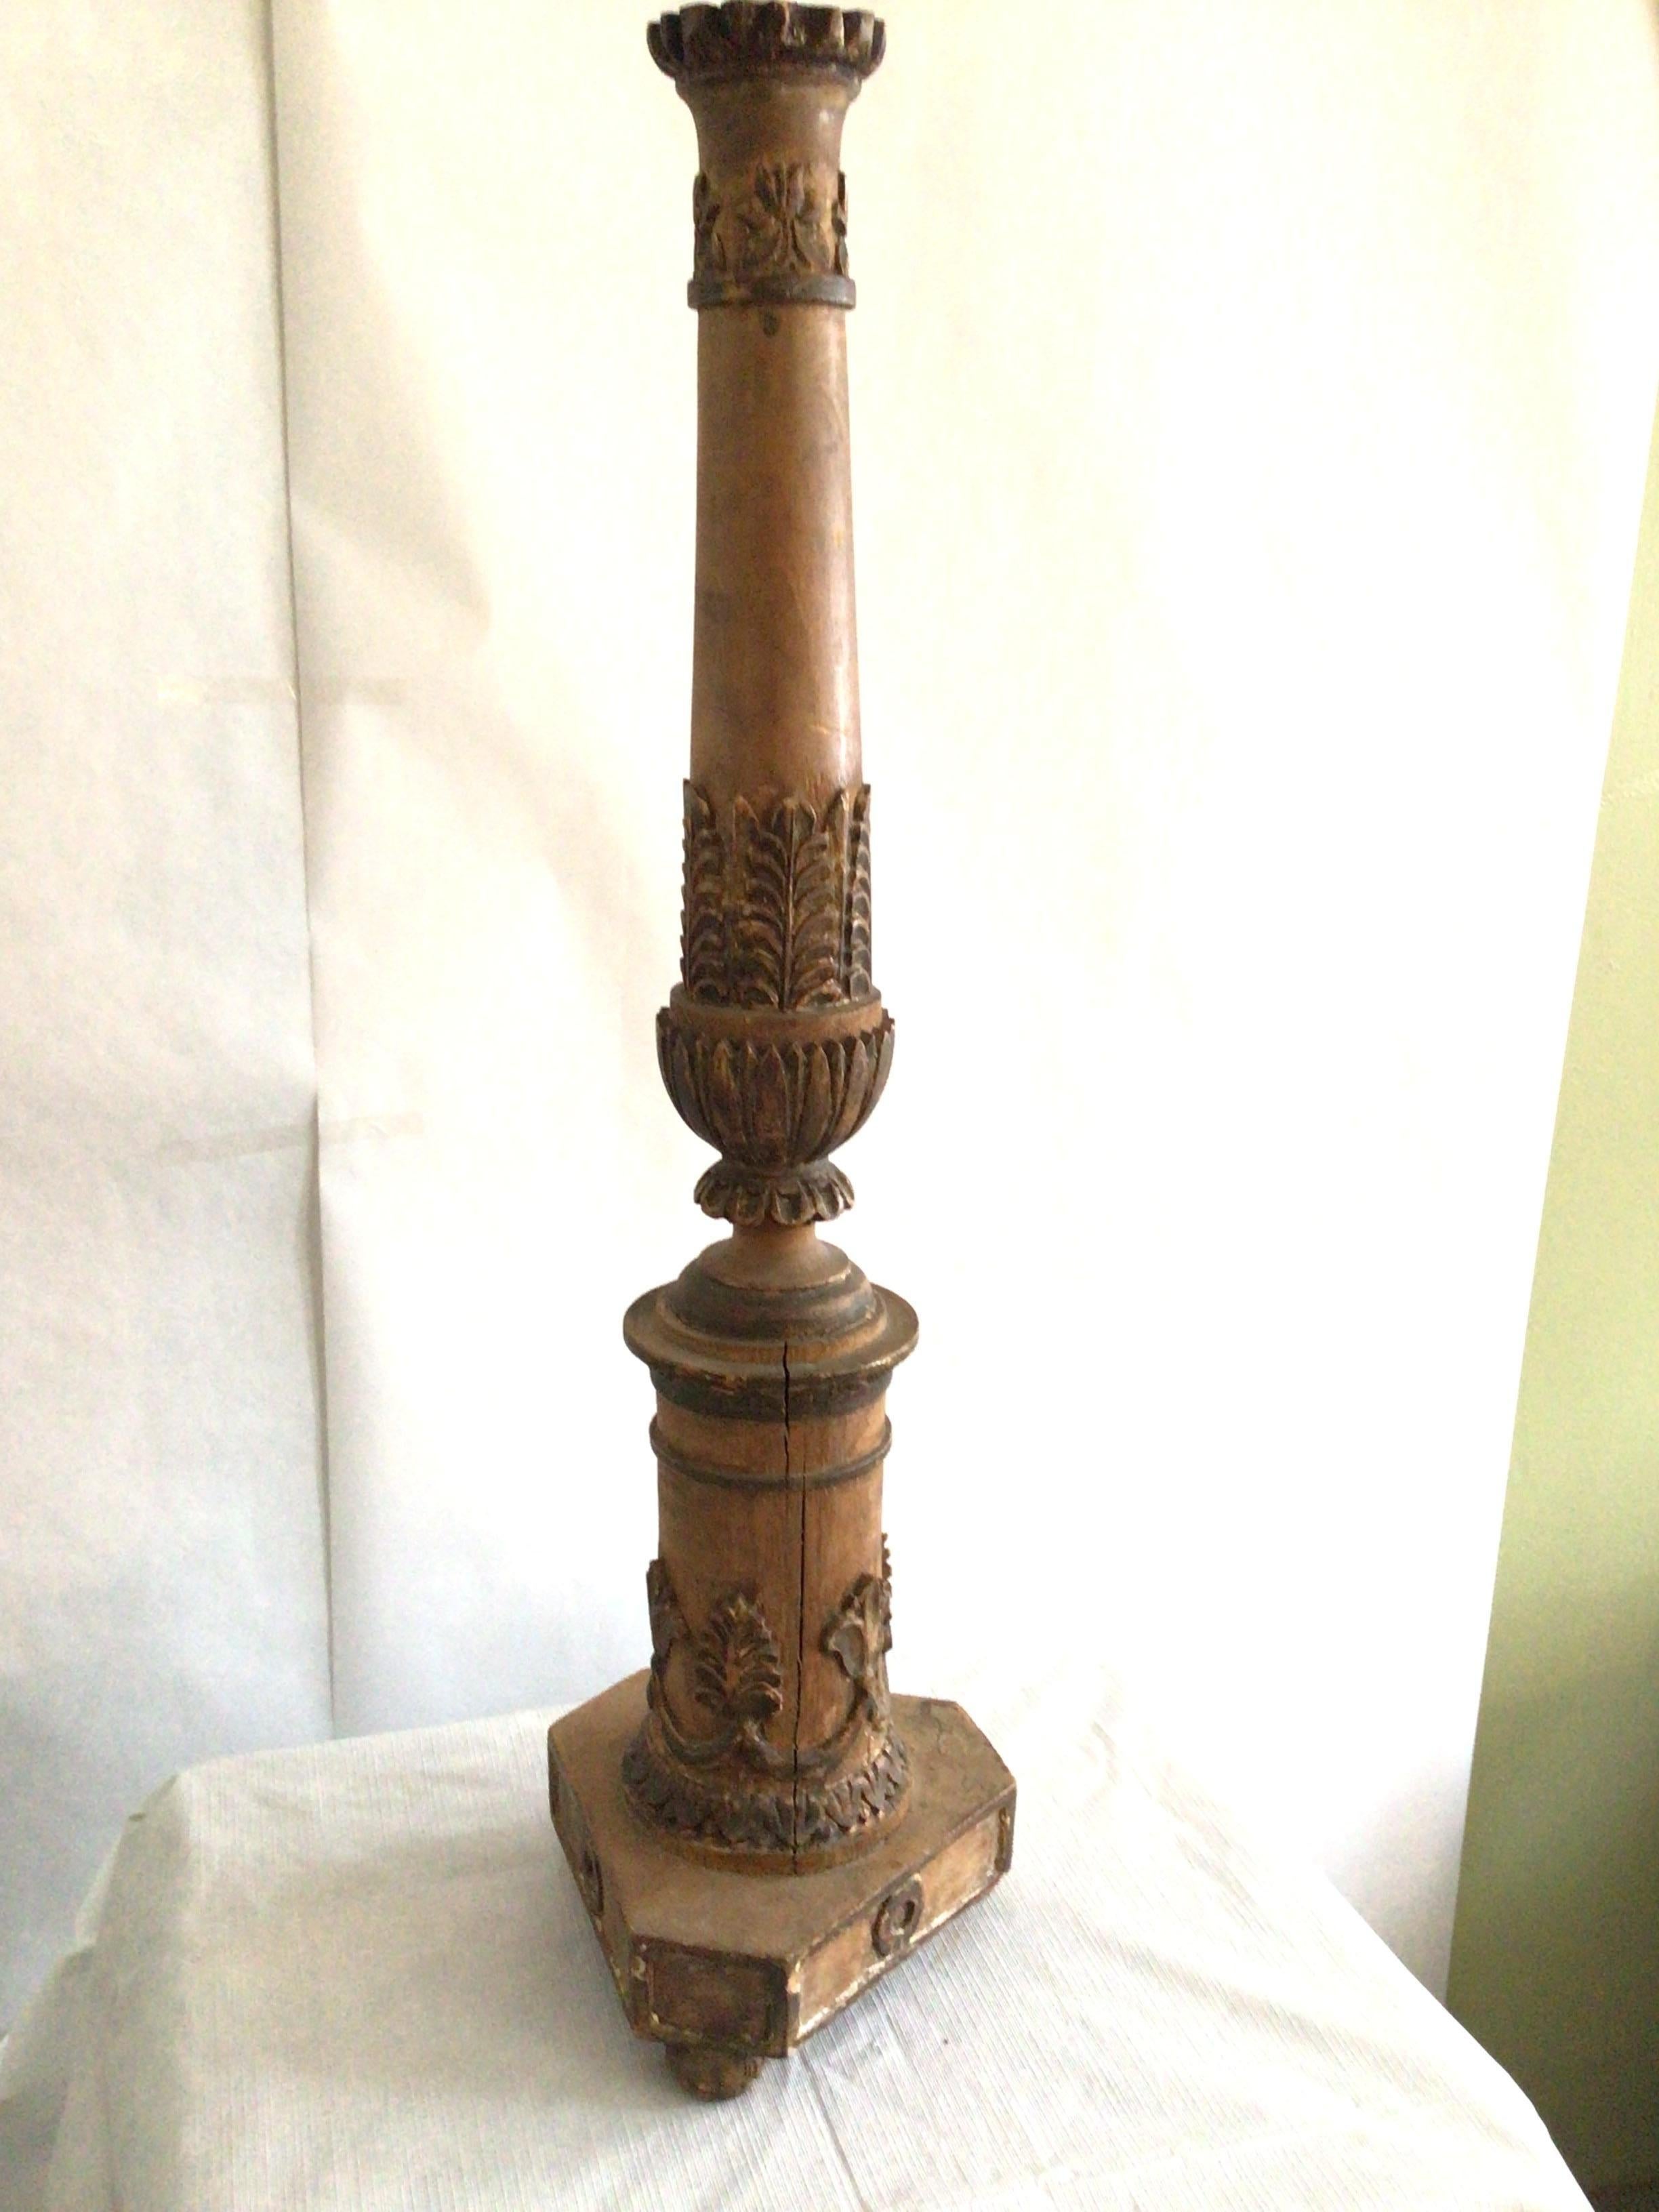 Lampe de table à colonne en bois sculpté des années 1950 avec feuilles d'acanthe.
Mesures : hauteur jusqu'au sommet de l'embout.